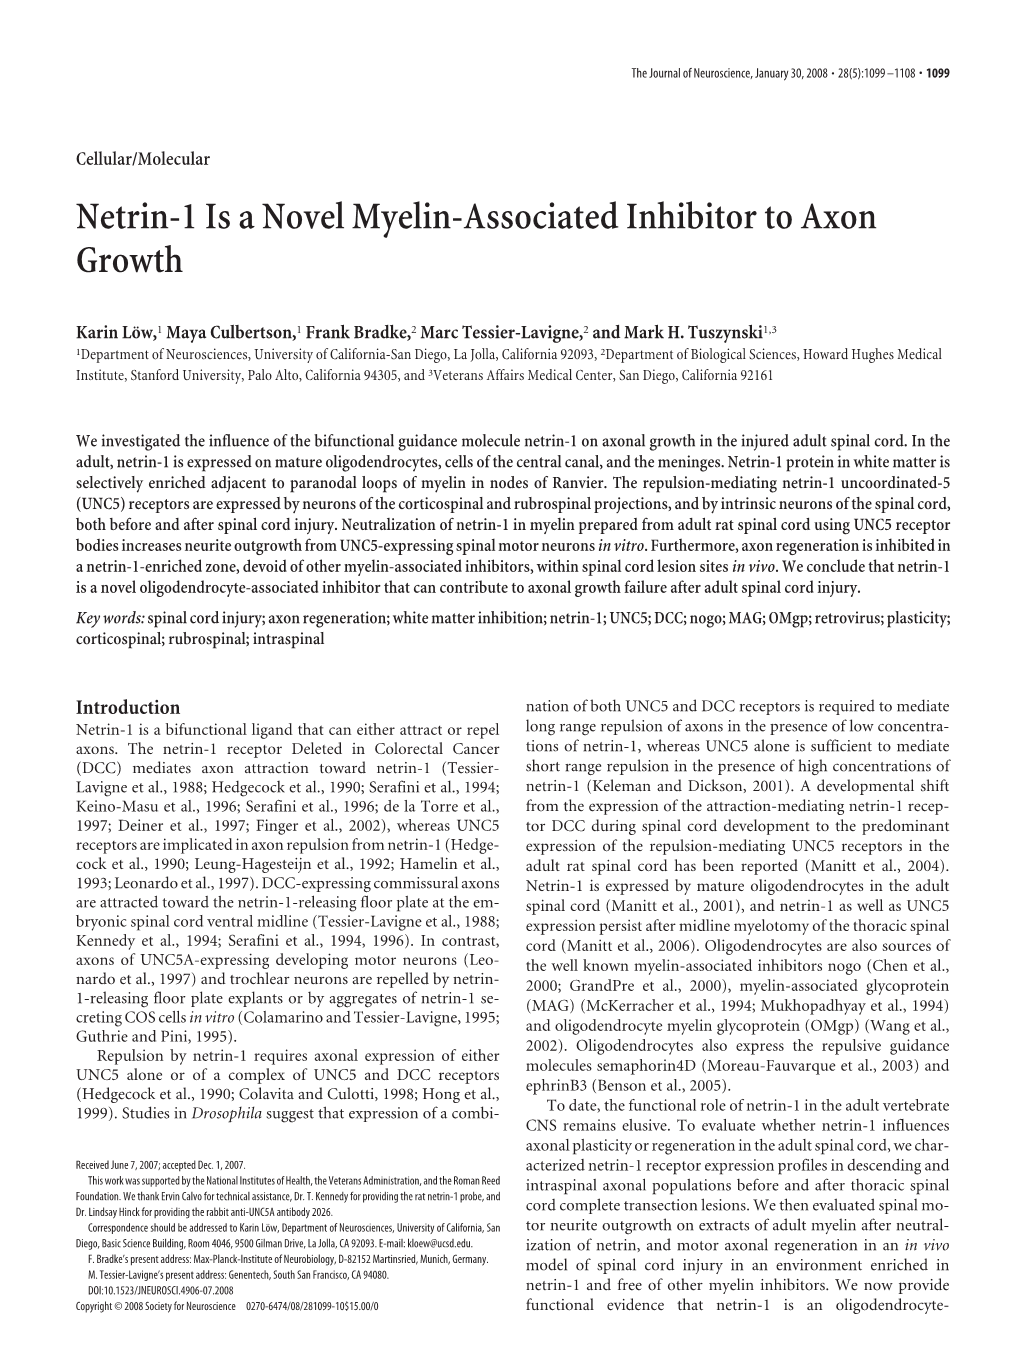 Netrin-1 Is a Novel Myelin-Associated Inhibitor to Axon Growth